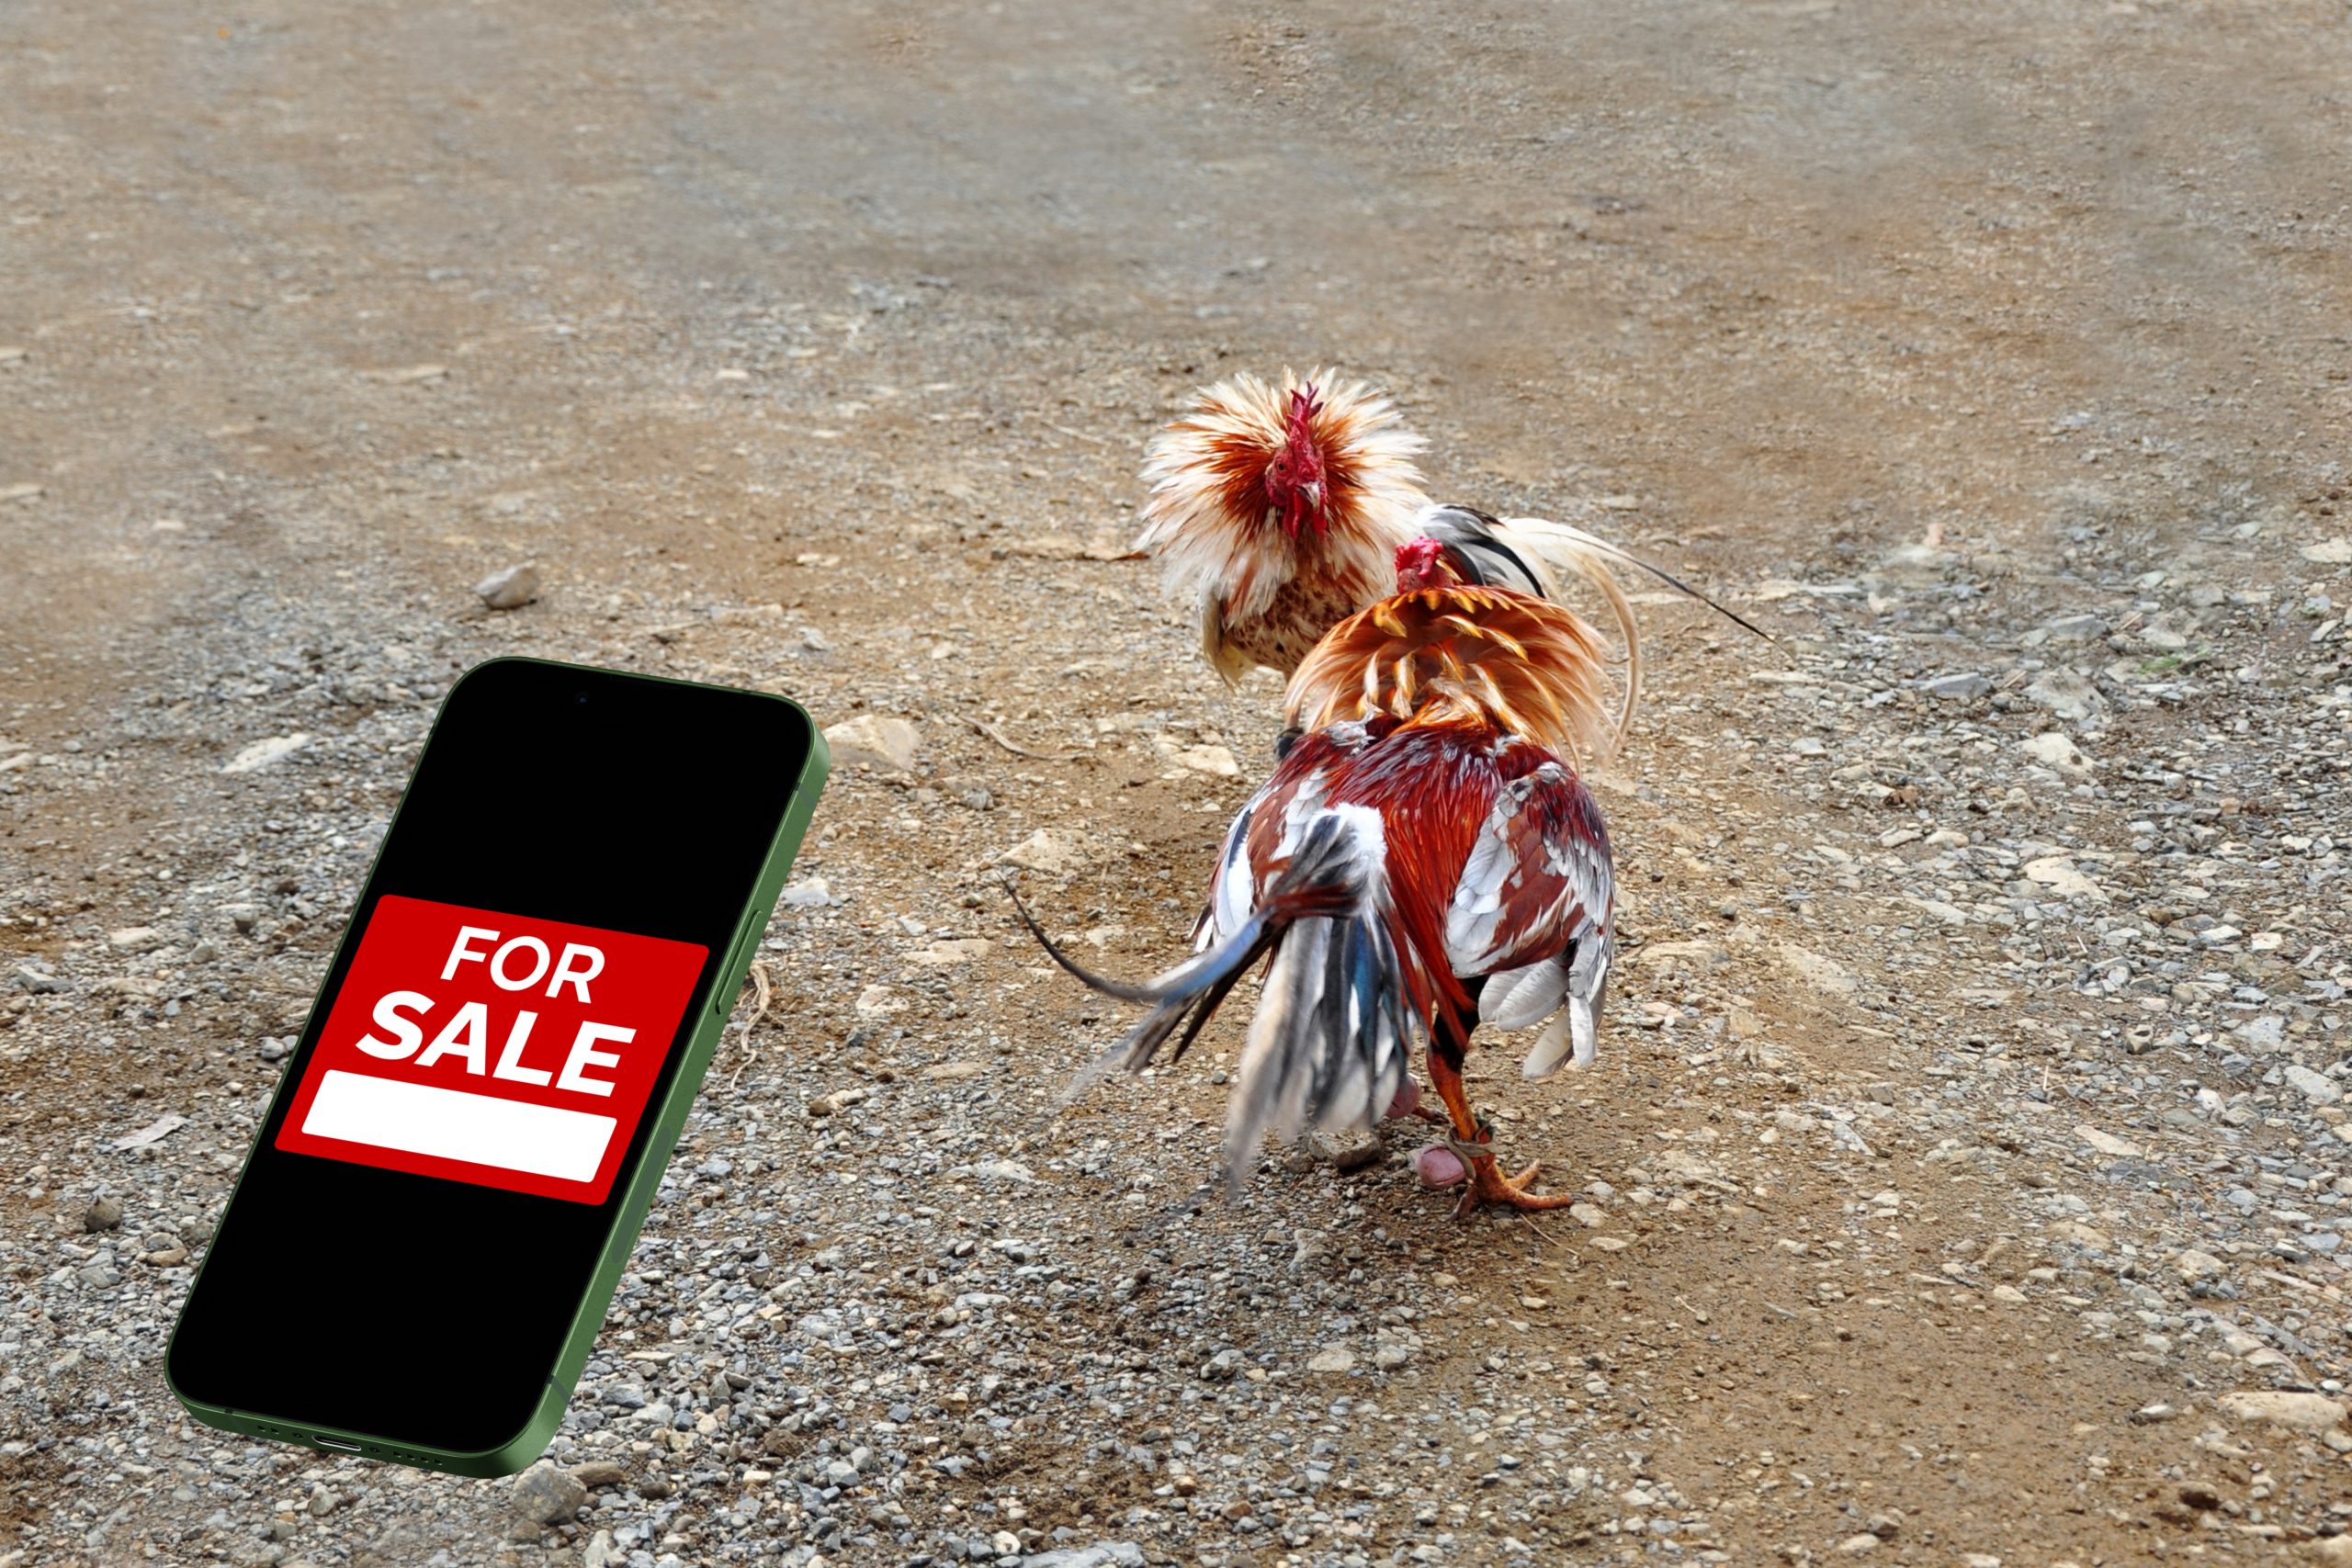 chọi gà được rao bán trên điện thoại di động để mua khái niệm gà trống